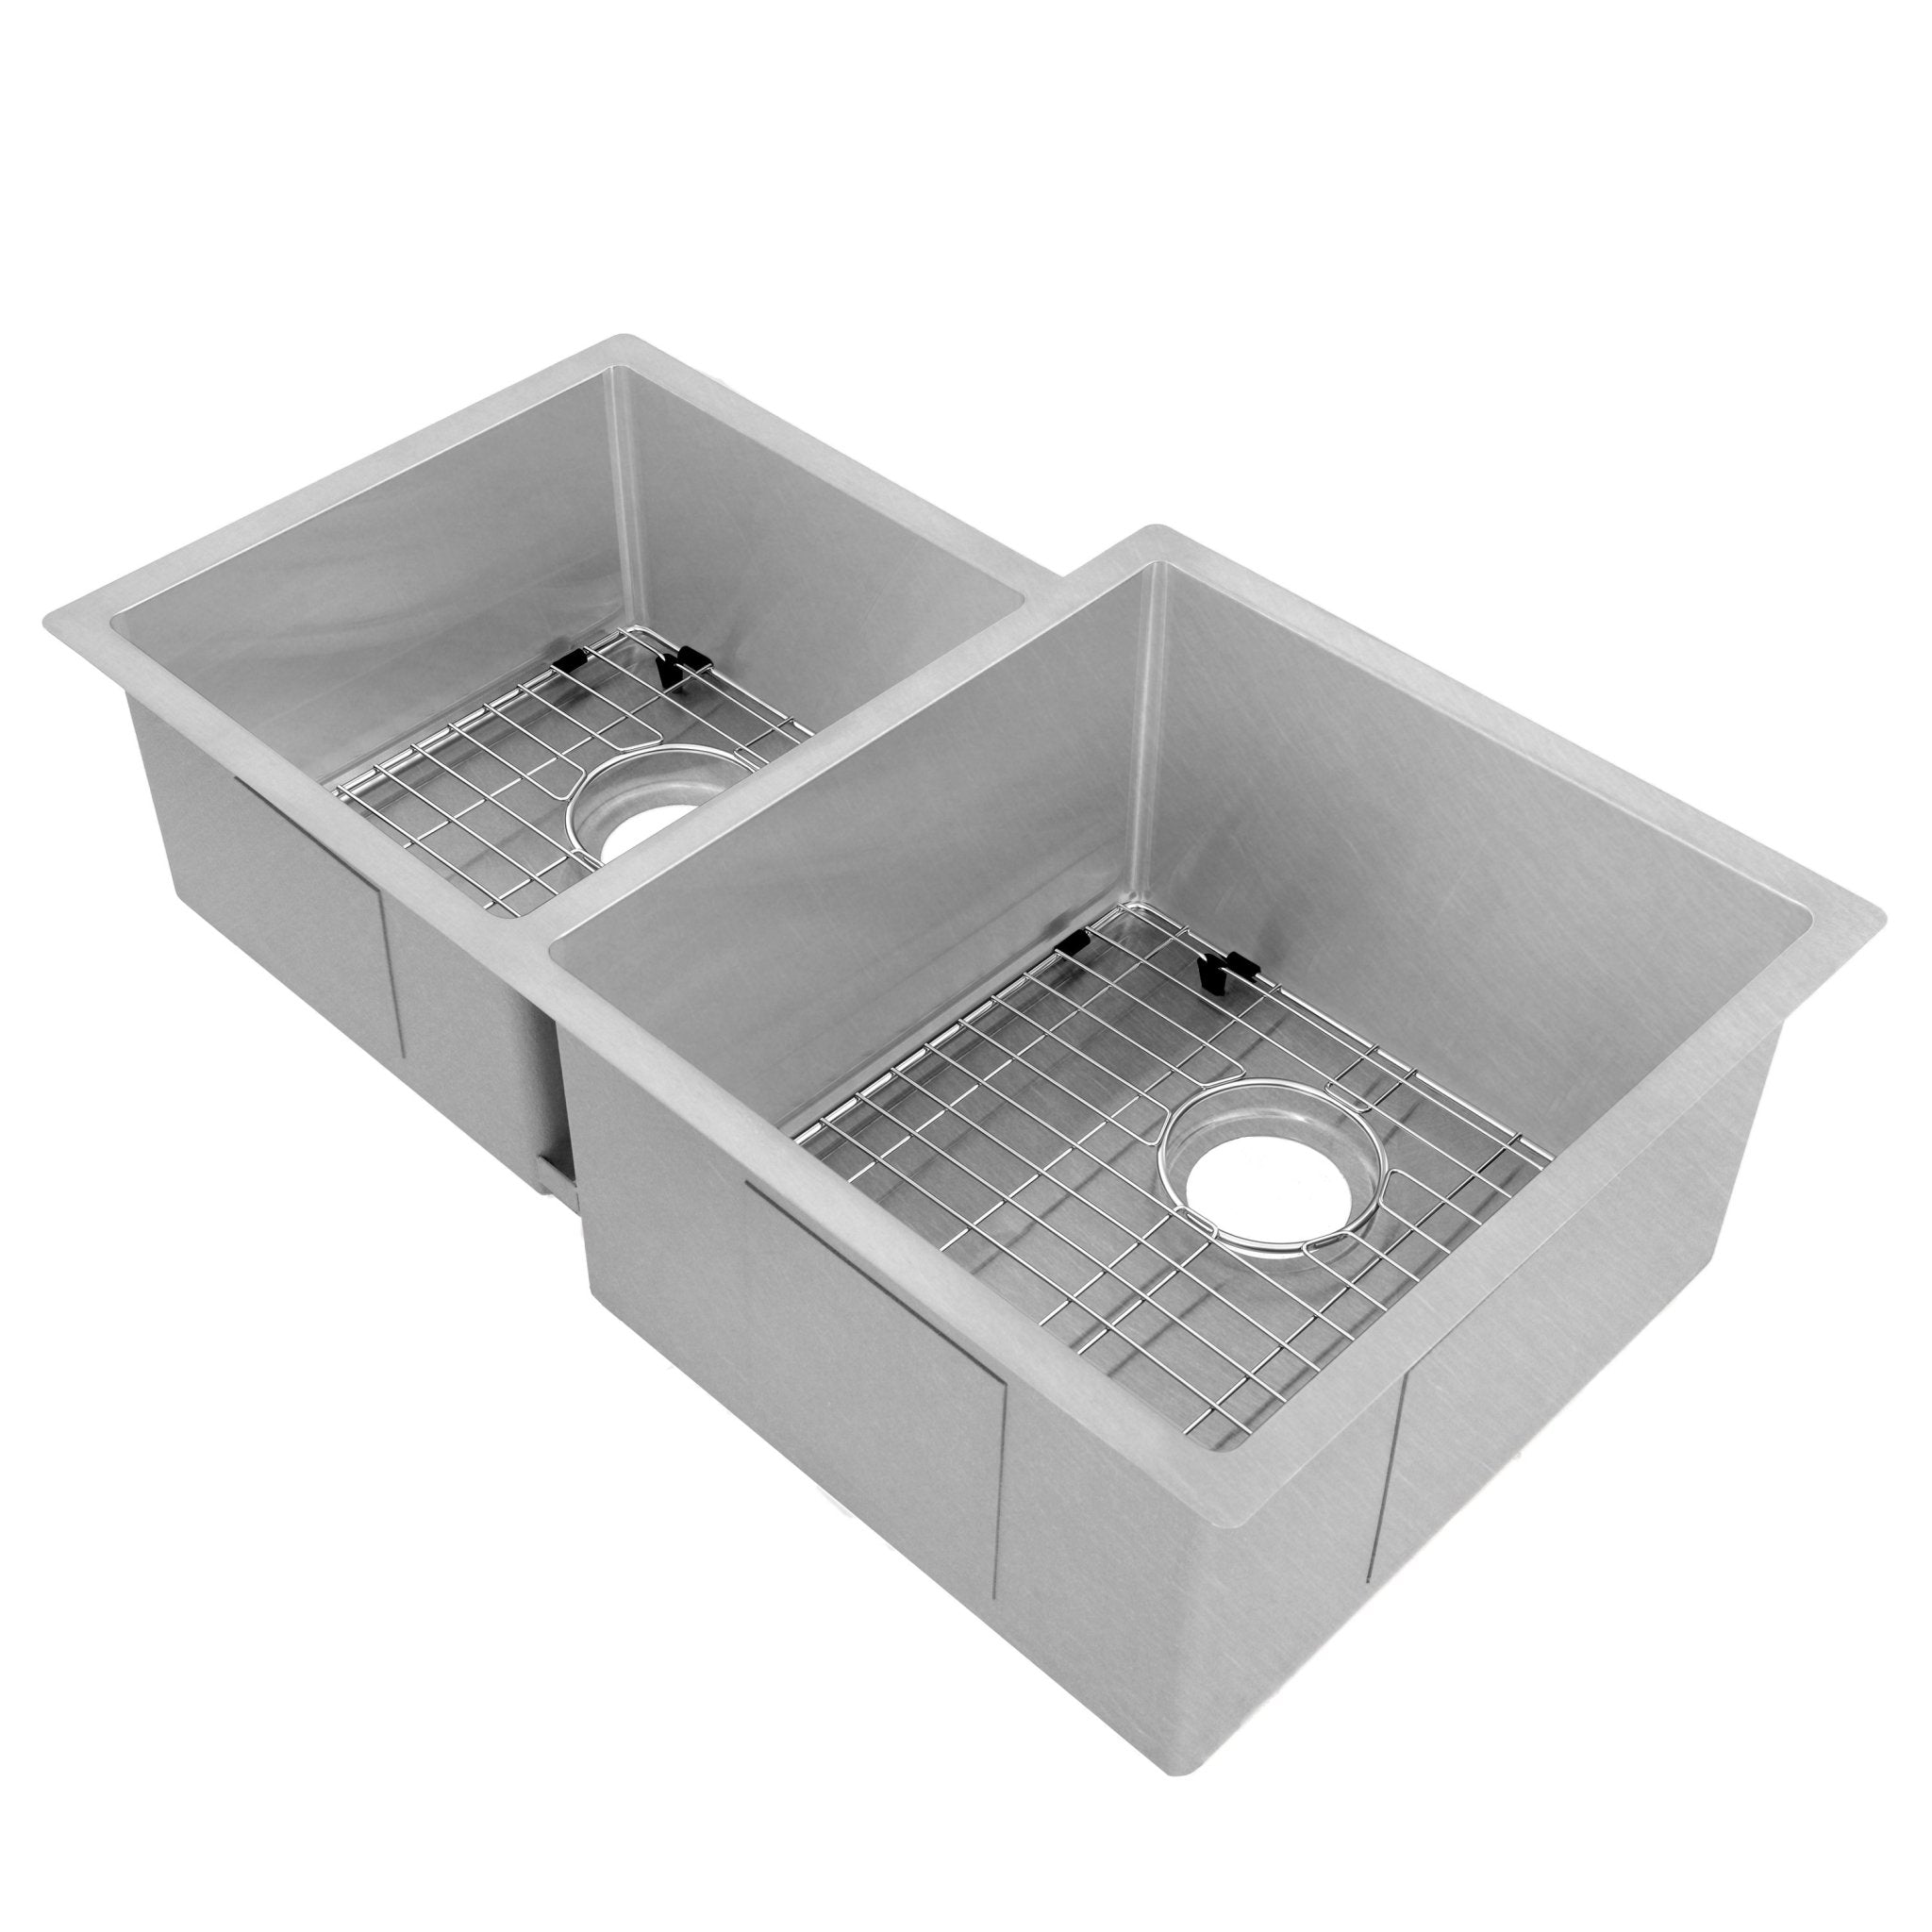 ZLINE 32" Jackson Undermount Double Bowl Sink (SRDL) - Rustic Kitchen & Bath - ZLINE Kitchen and Bath